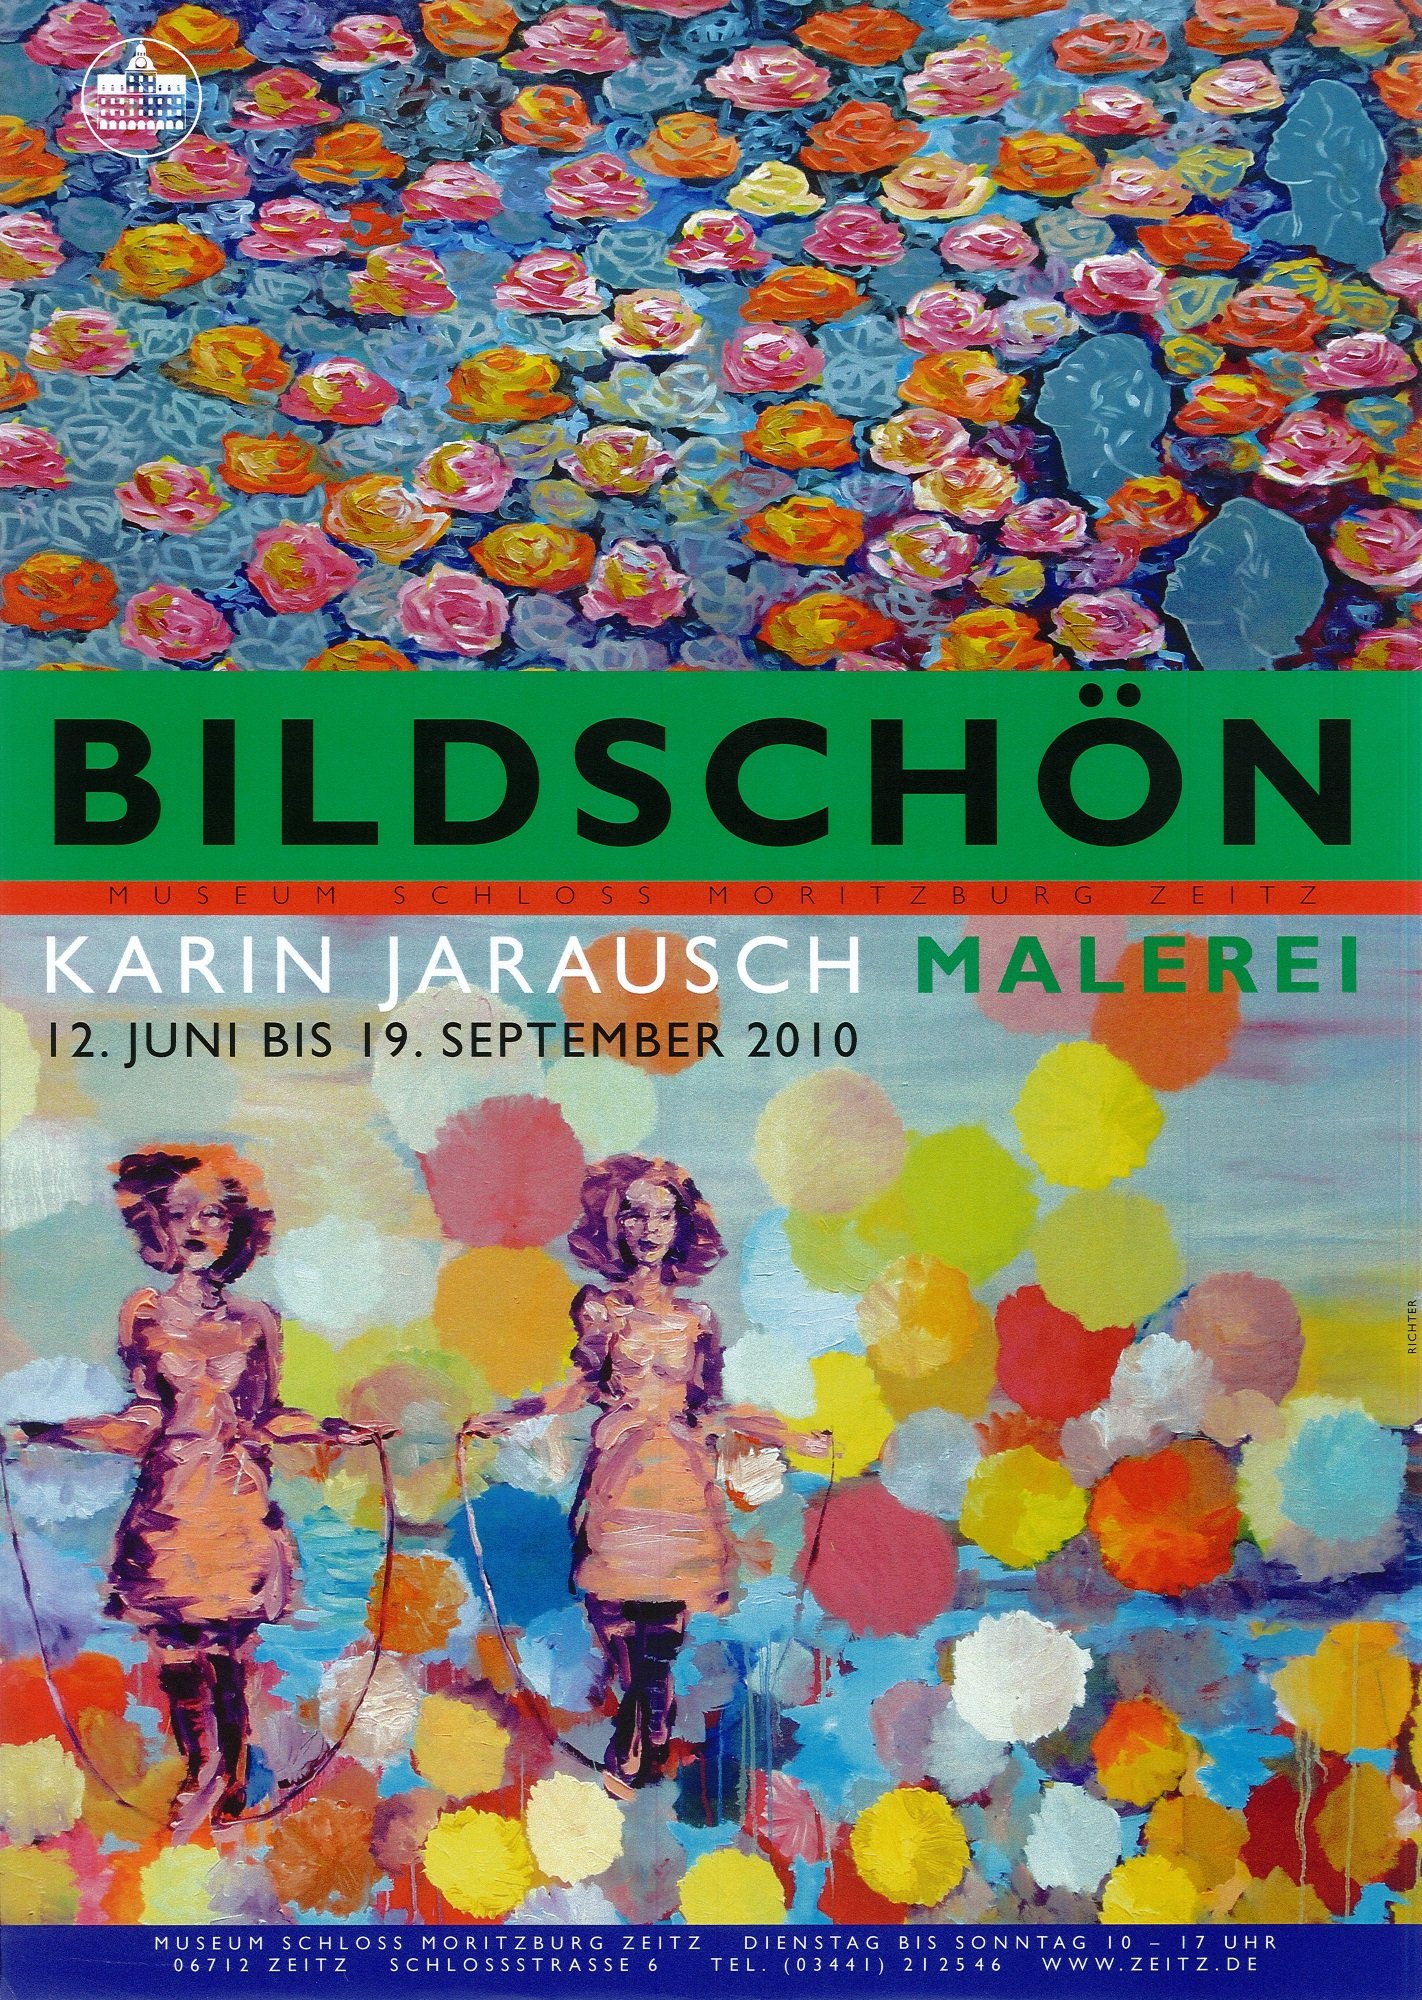 Ausstellungsplakat "Bildschön. Karin Jarusch Malerei" (Museum Schloss Moritzburg Zeitz CC BY-NC-SA)